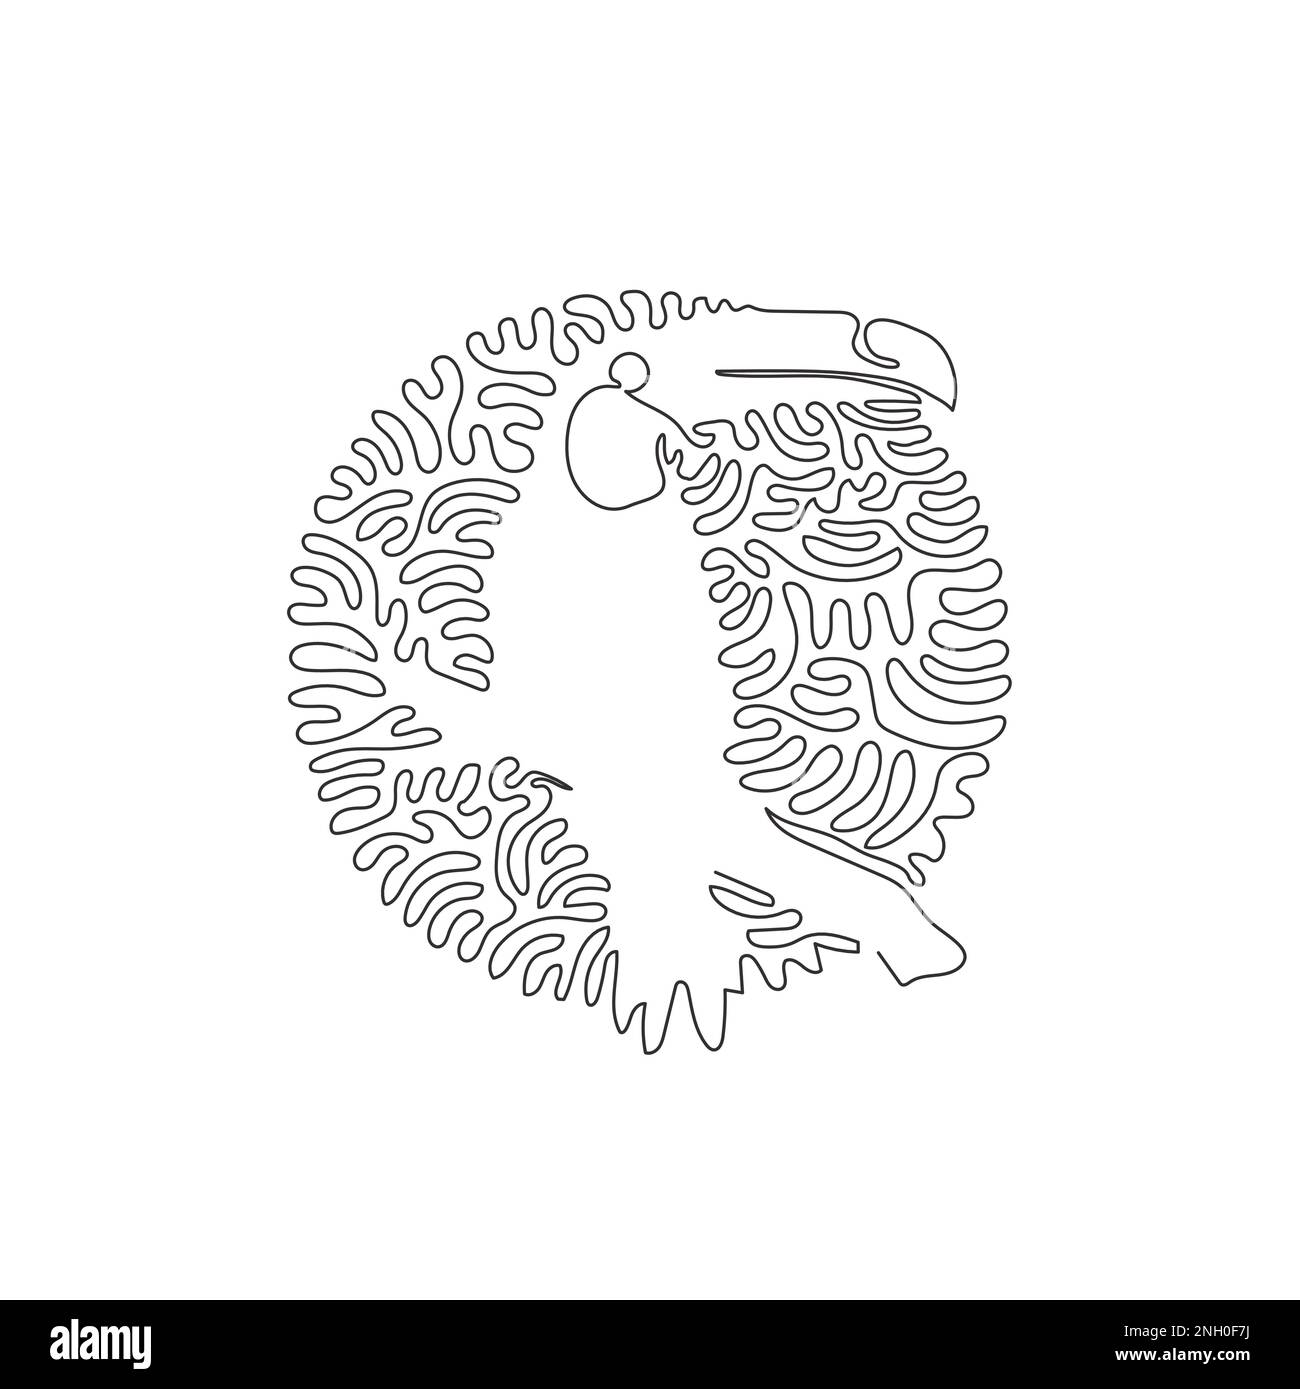 Eine einzelne geschwungene Zeichnung mit einer Linie wunderschöner abstrakter Tukan-Kunst. Durchgehende Strichzeichnung grafischer Designvektor Darstellung eines niedlichen Taucan für Icon Stock Vektor